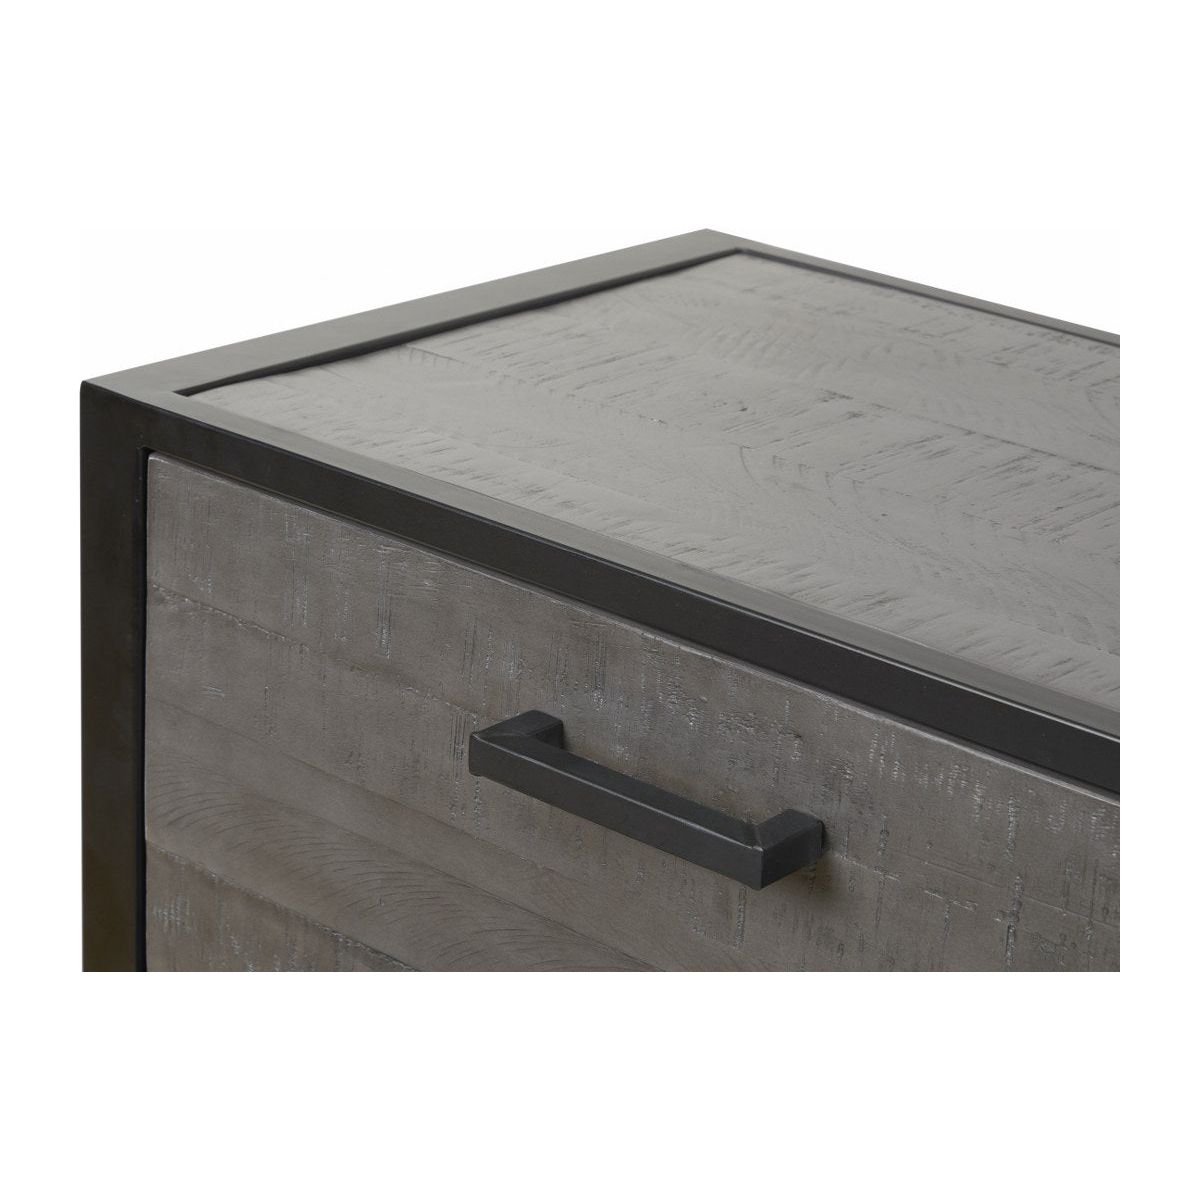 Dresser | Furniture series Micras | Dark gray, black | 220x